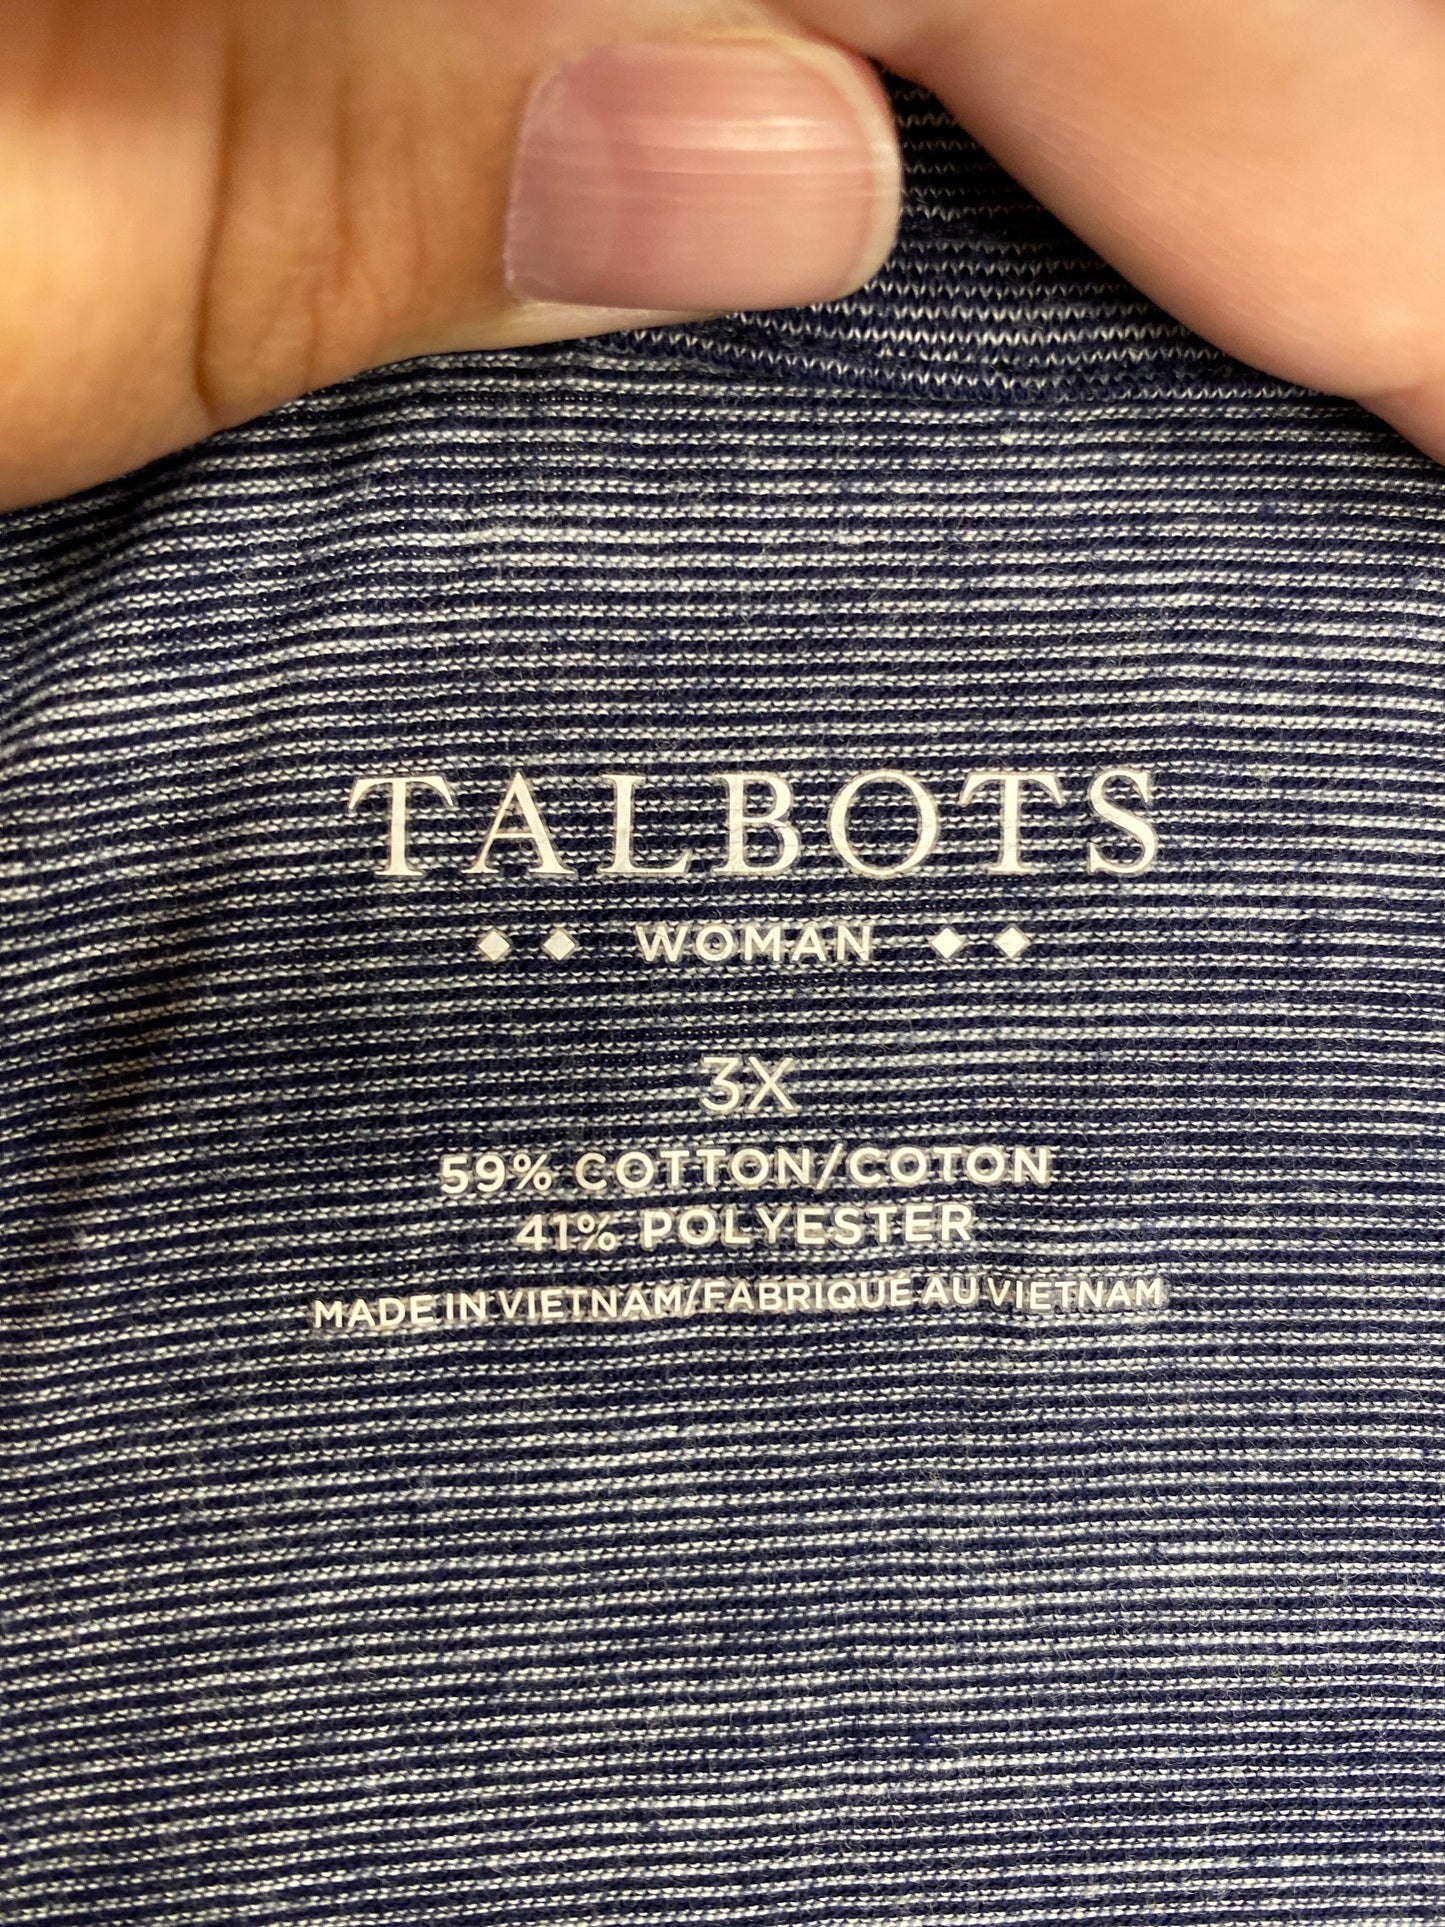 Blue & White Top Short Sleeve Basic Talbots, Size 3x